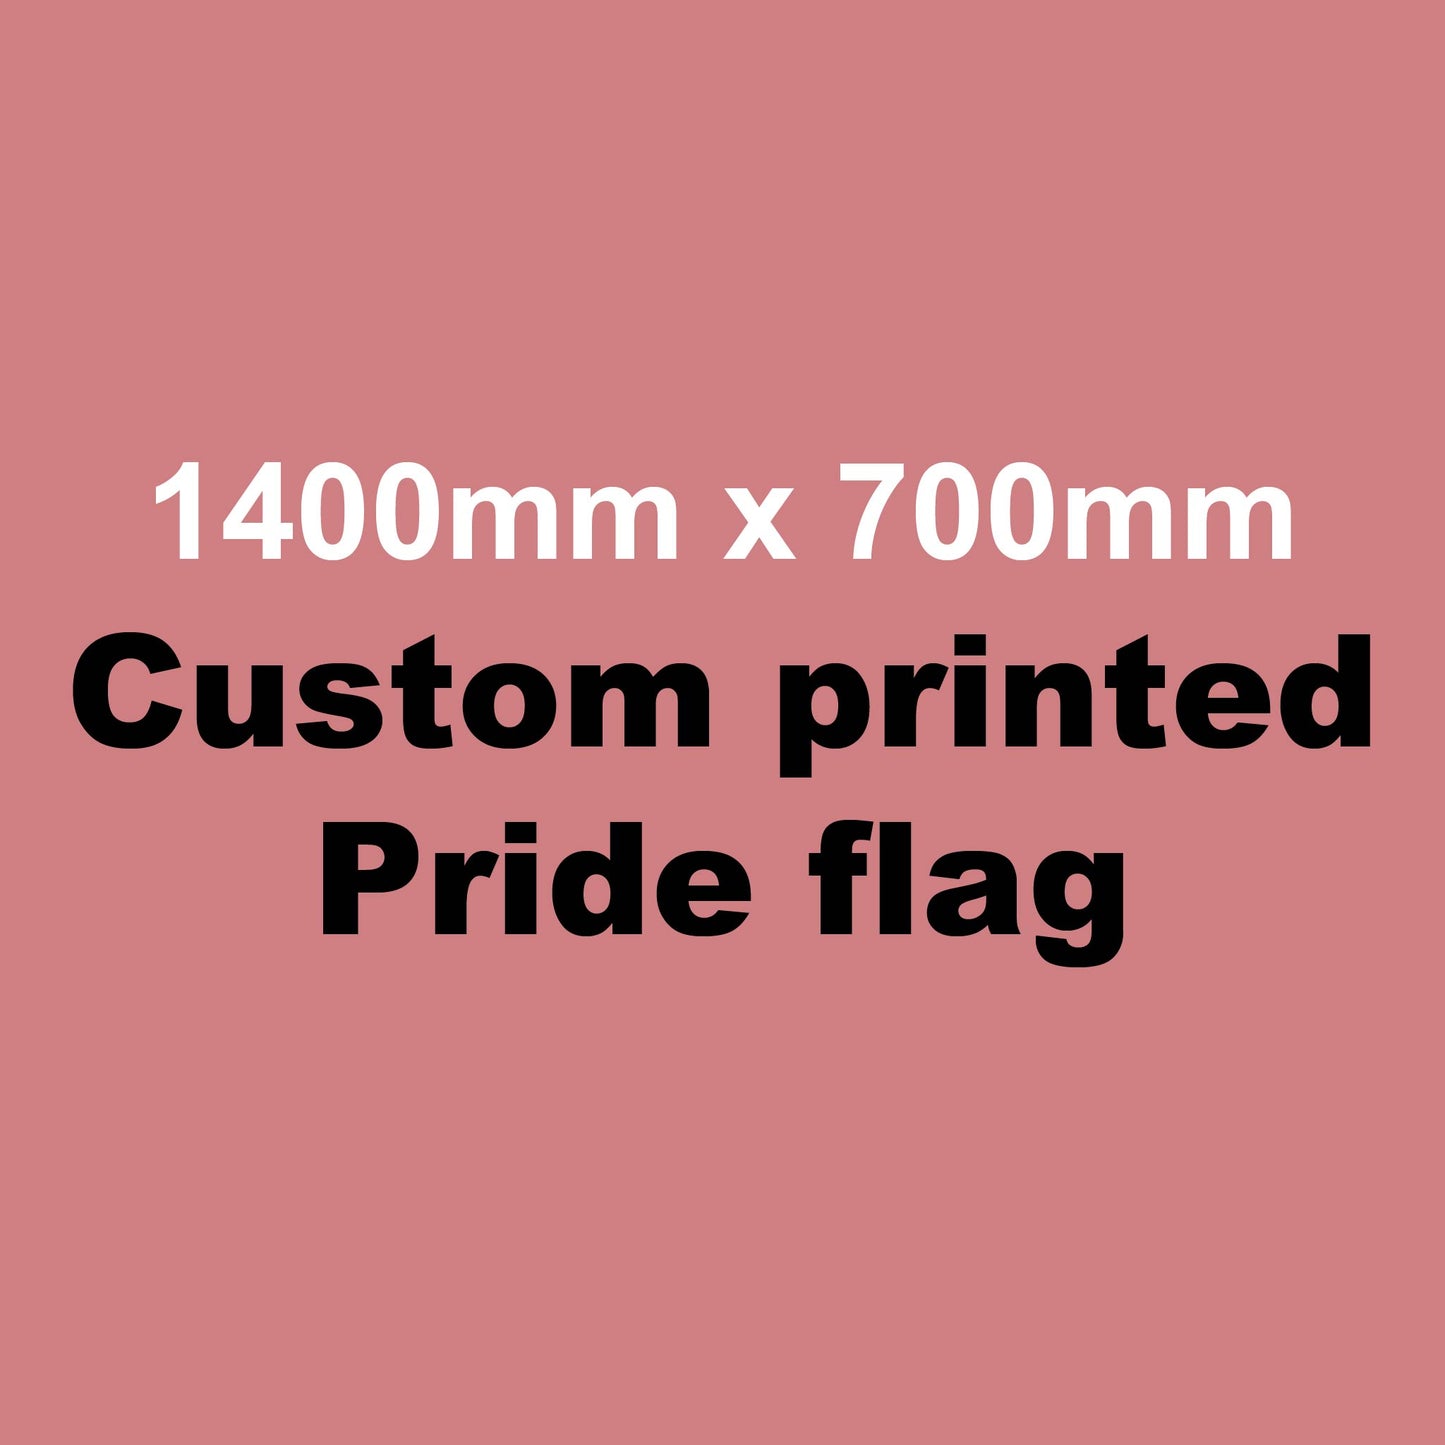 Custom Made Pride Flag: 1400mm x 700mm